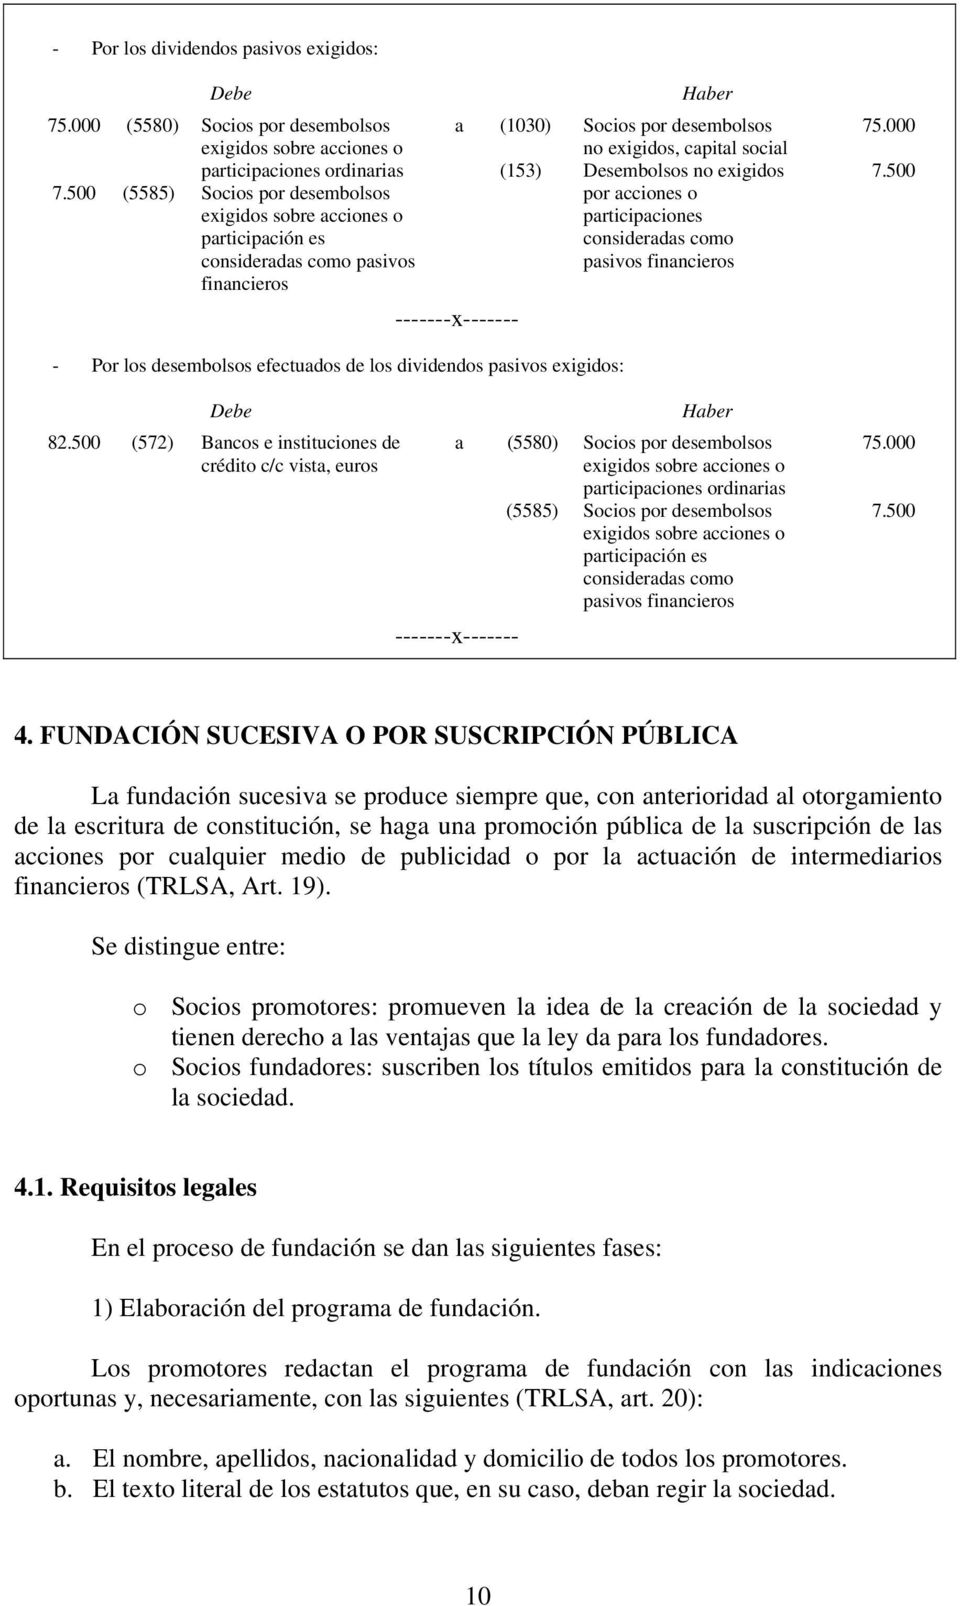 capital social Desembolsos no exigidos por acciones o participaciones consideradas como 75.000 7.500 - Por los desembolsos efectuados de los dividendos pasivos exigidos: 82.